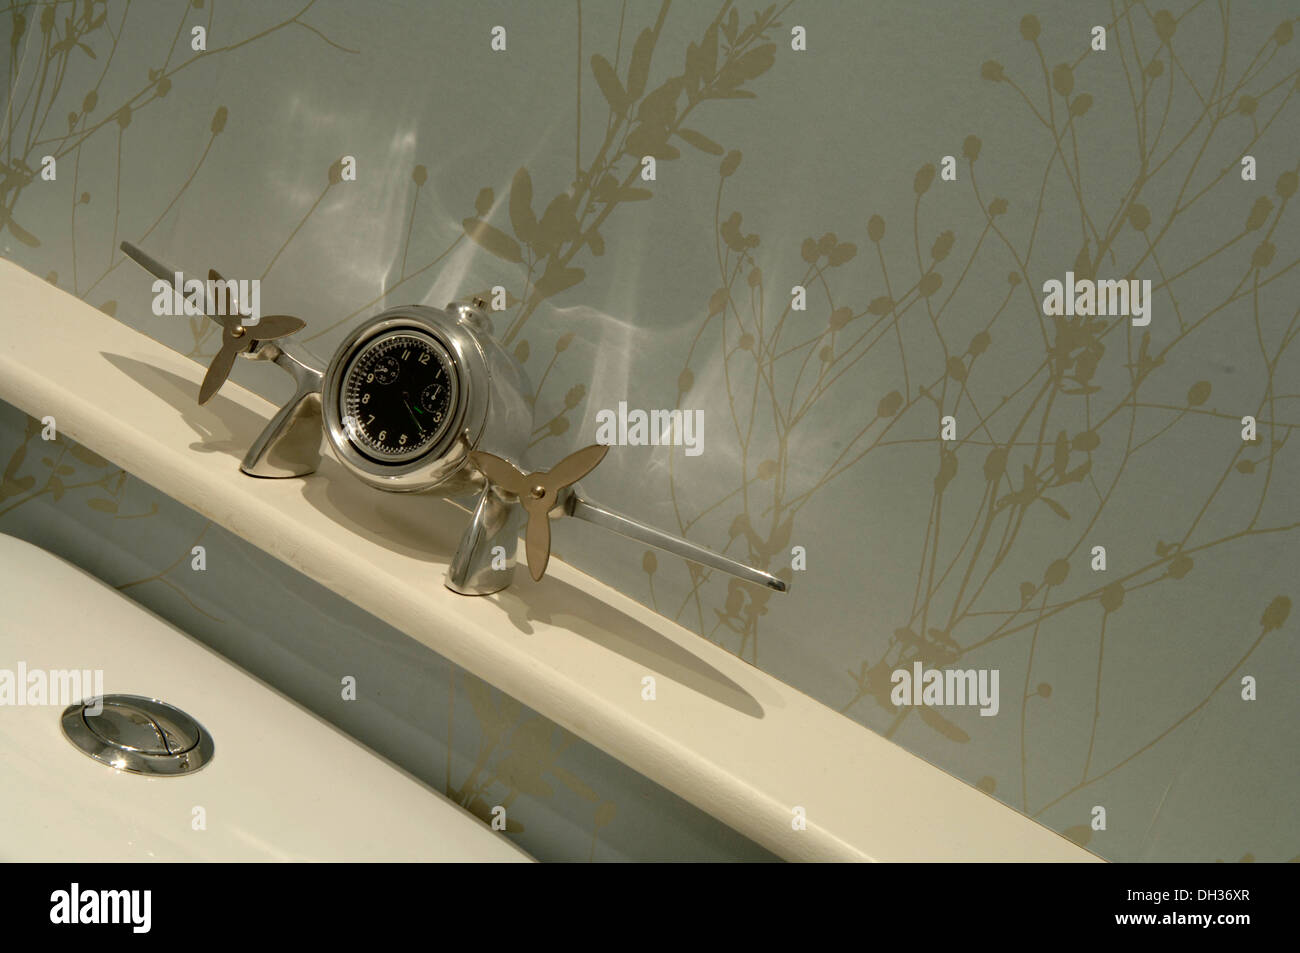 Detalle de un cuarto de baño que muestra un reloj de metal tono Plata que tiene la forma de un avión. Se ha hilado de libre flotación hélices. Foto de stock